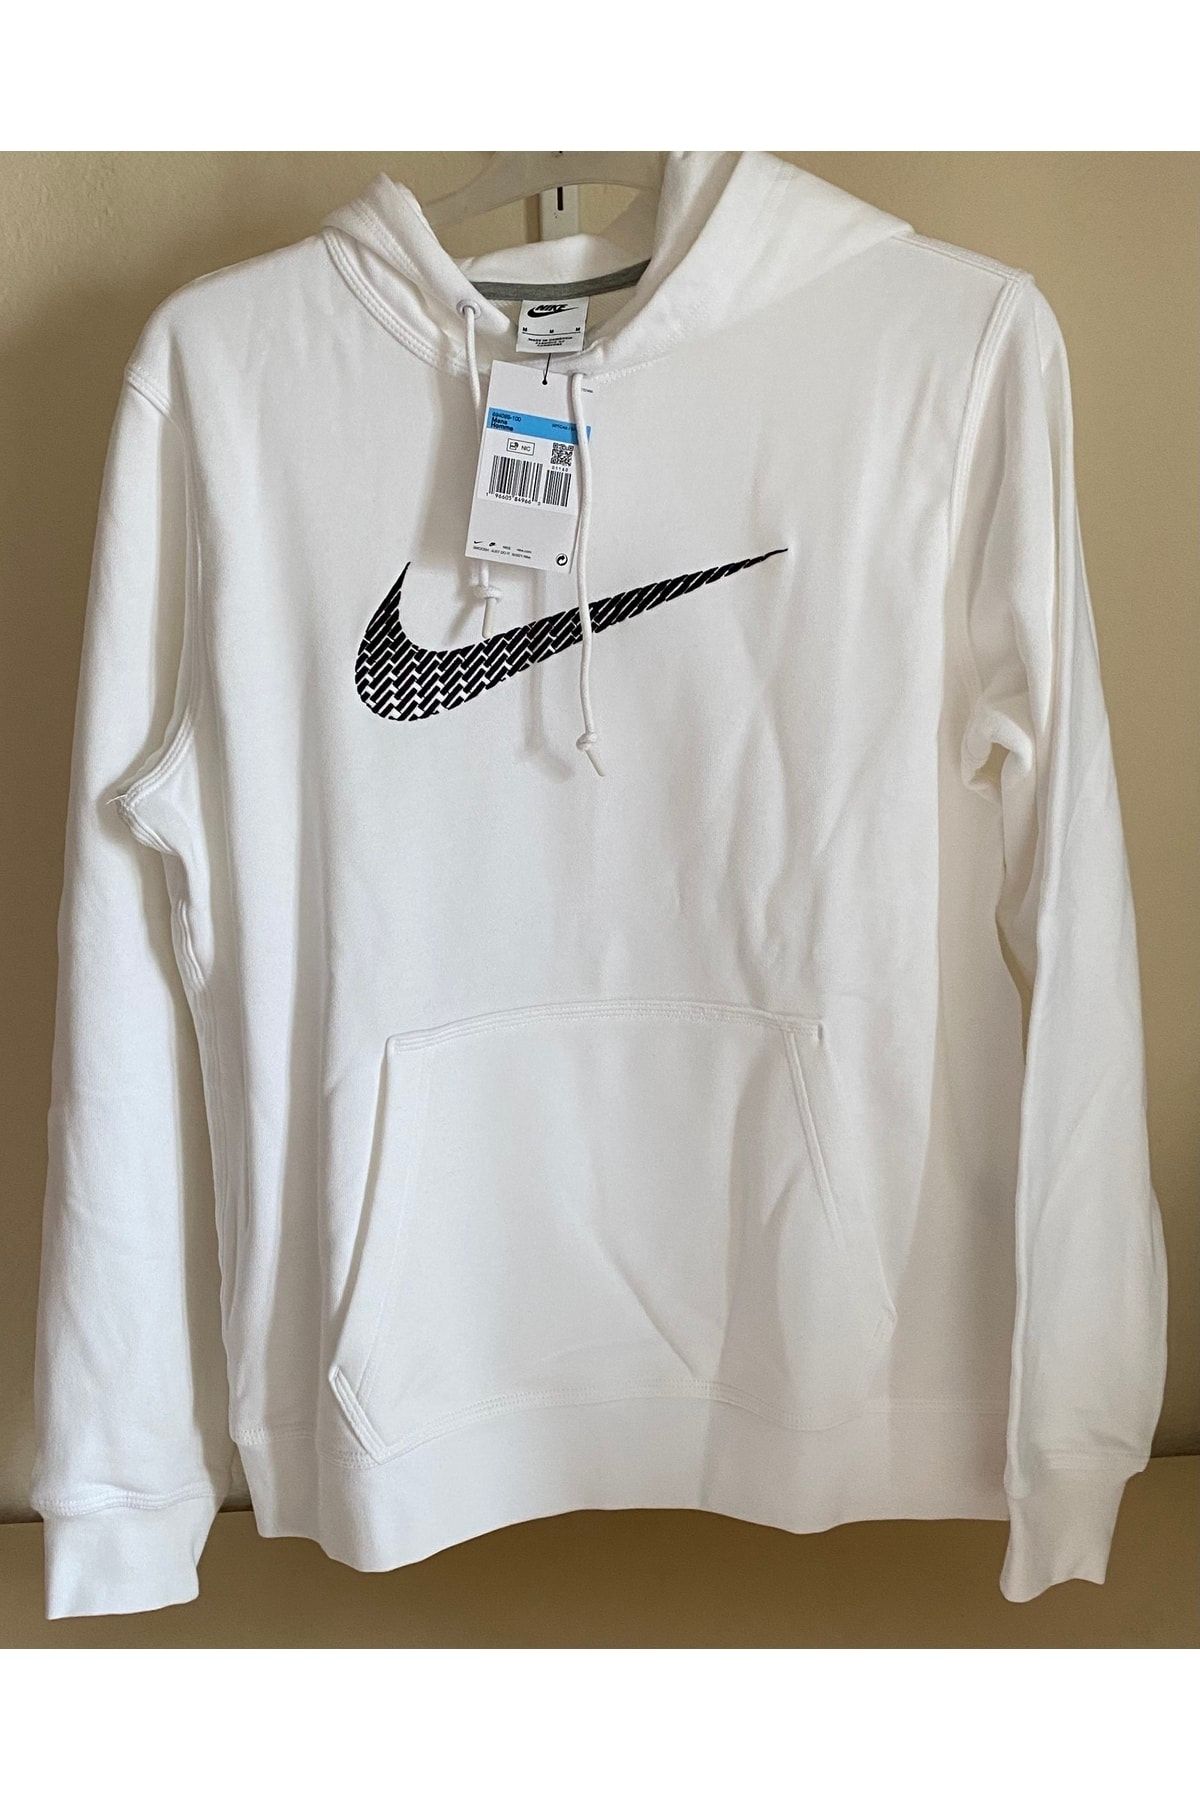 Nike 694099-100 Beyaz Erkek Sweatshirt